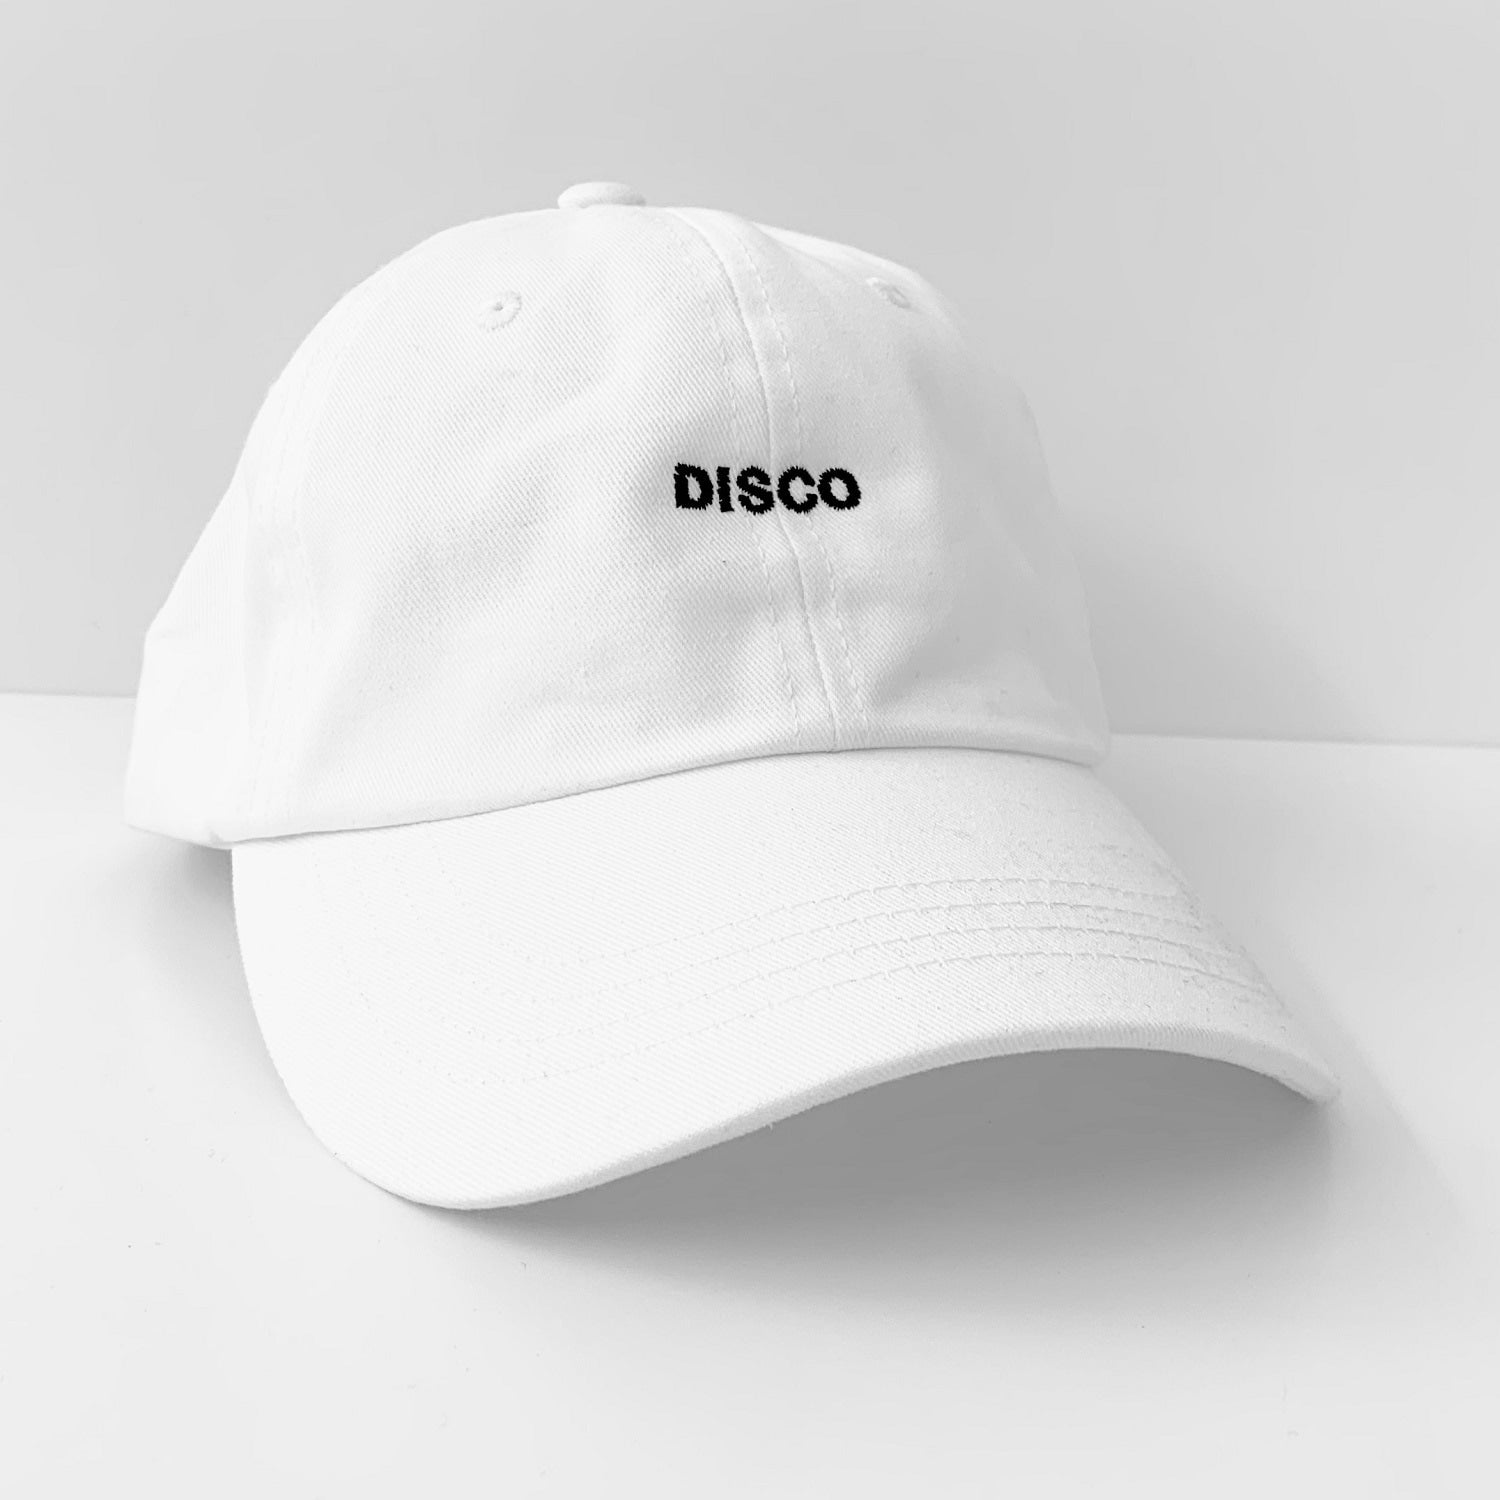 The Disco Cap, white